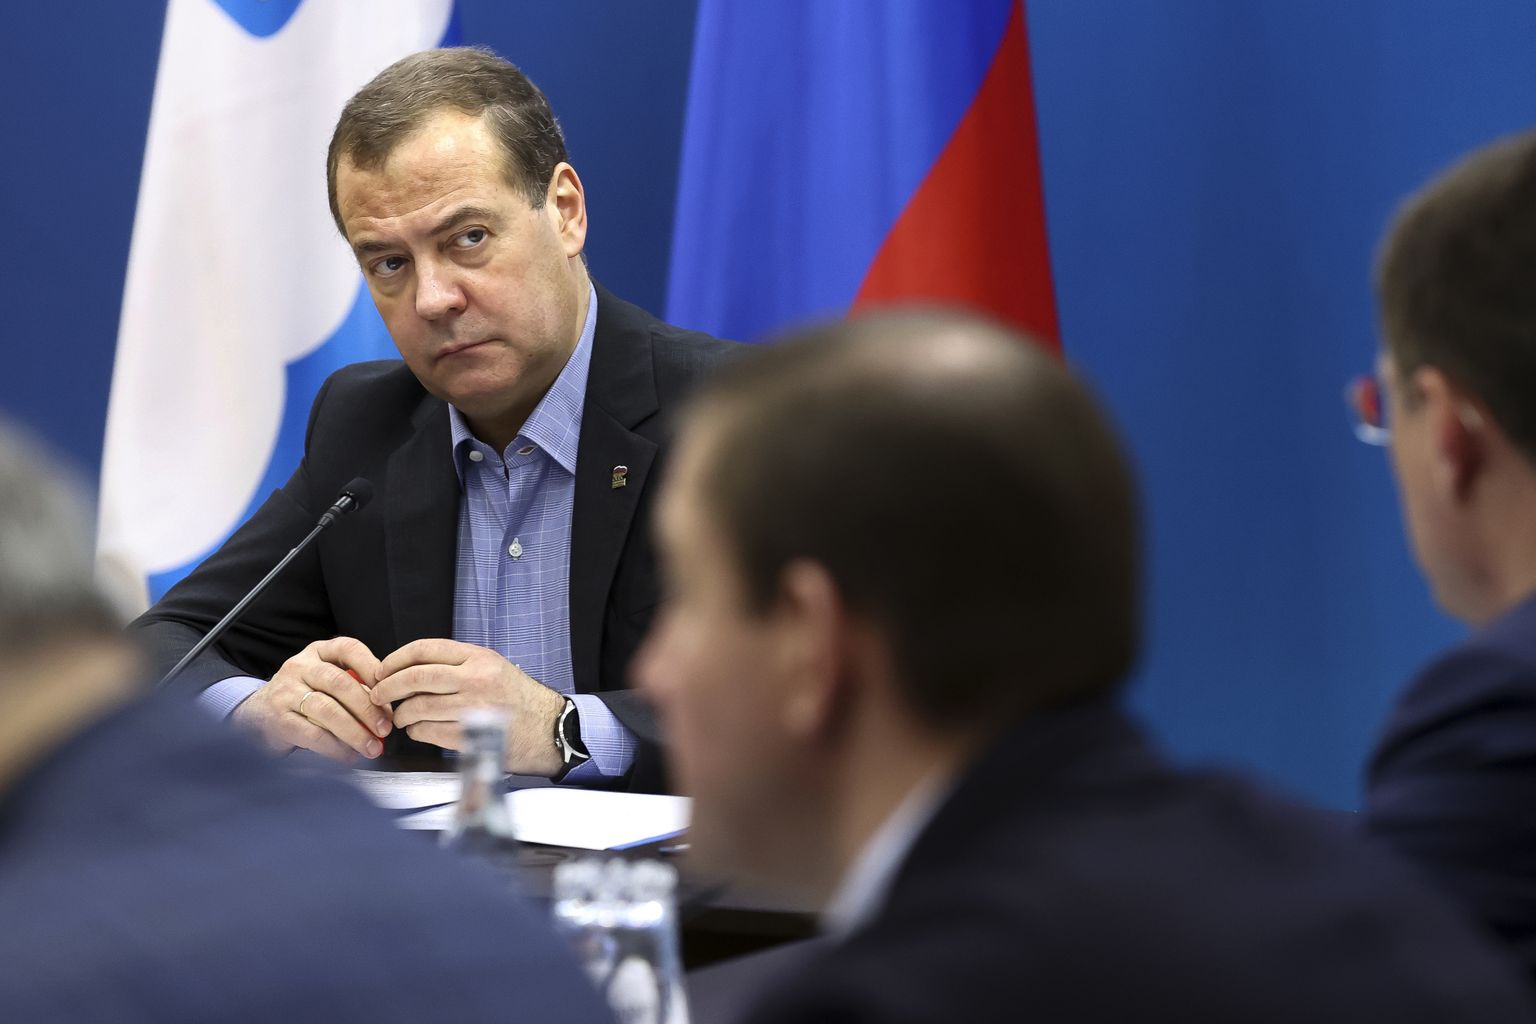 Venemaa julgeolekunõukogu asejuht Dmitri Medvedev 12. jaanuaril 2023 Peterburis partei Ühtne Venemaa nõupidamisel. Ta on Ühtse Venemaa esimees